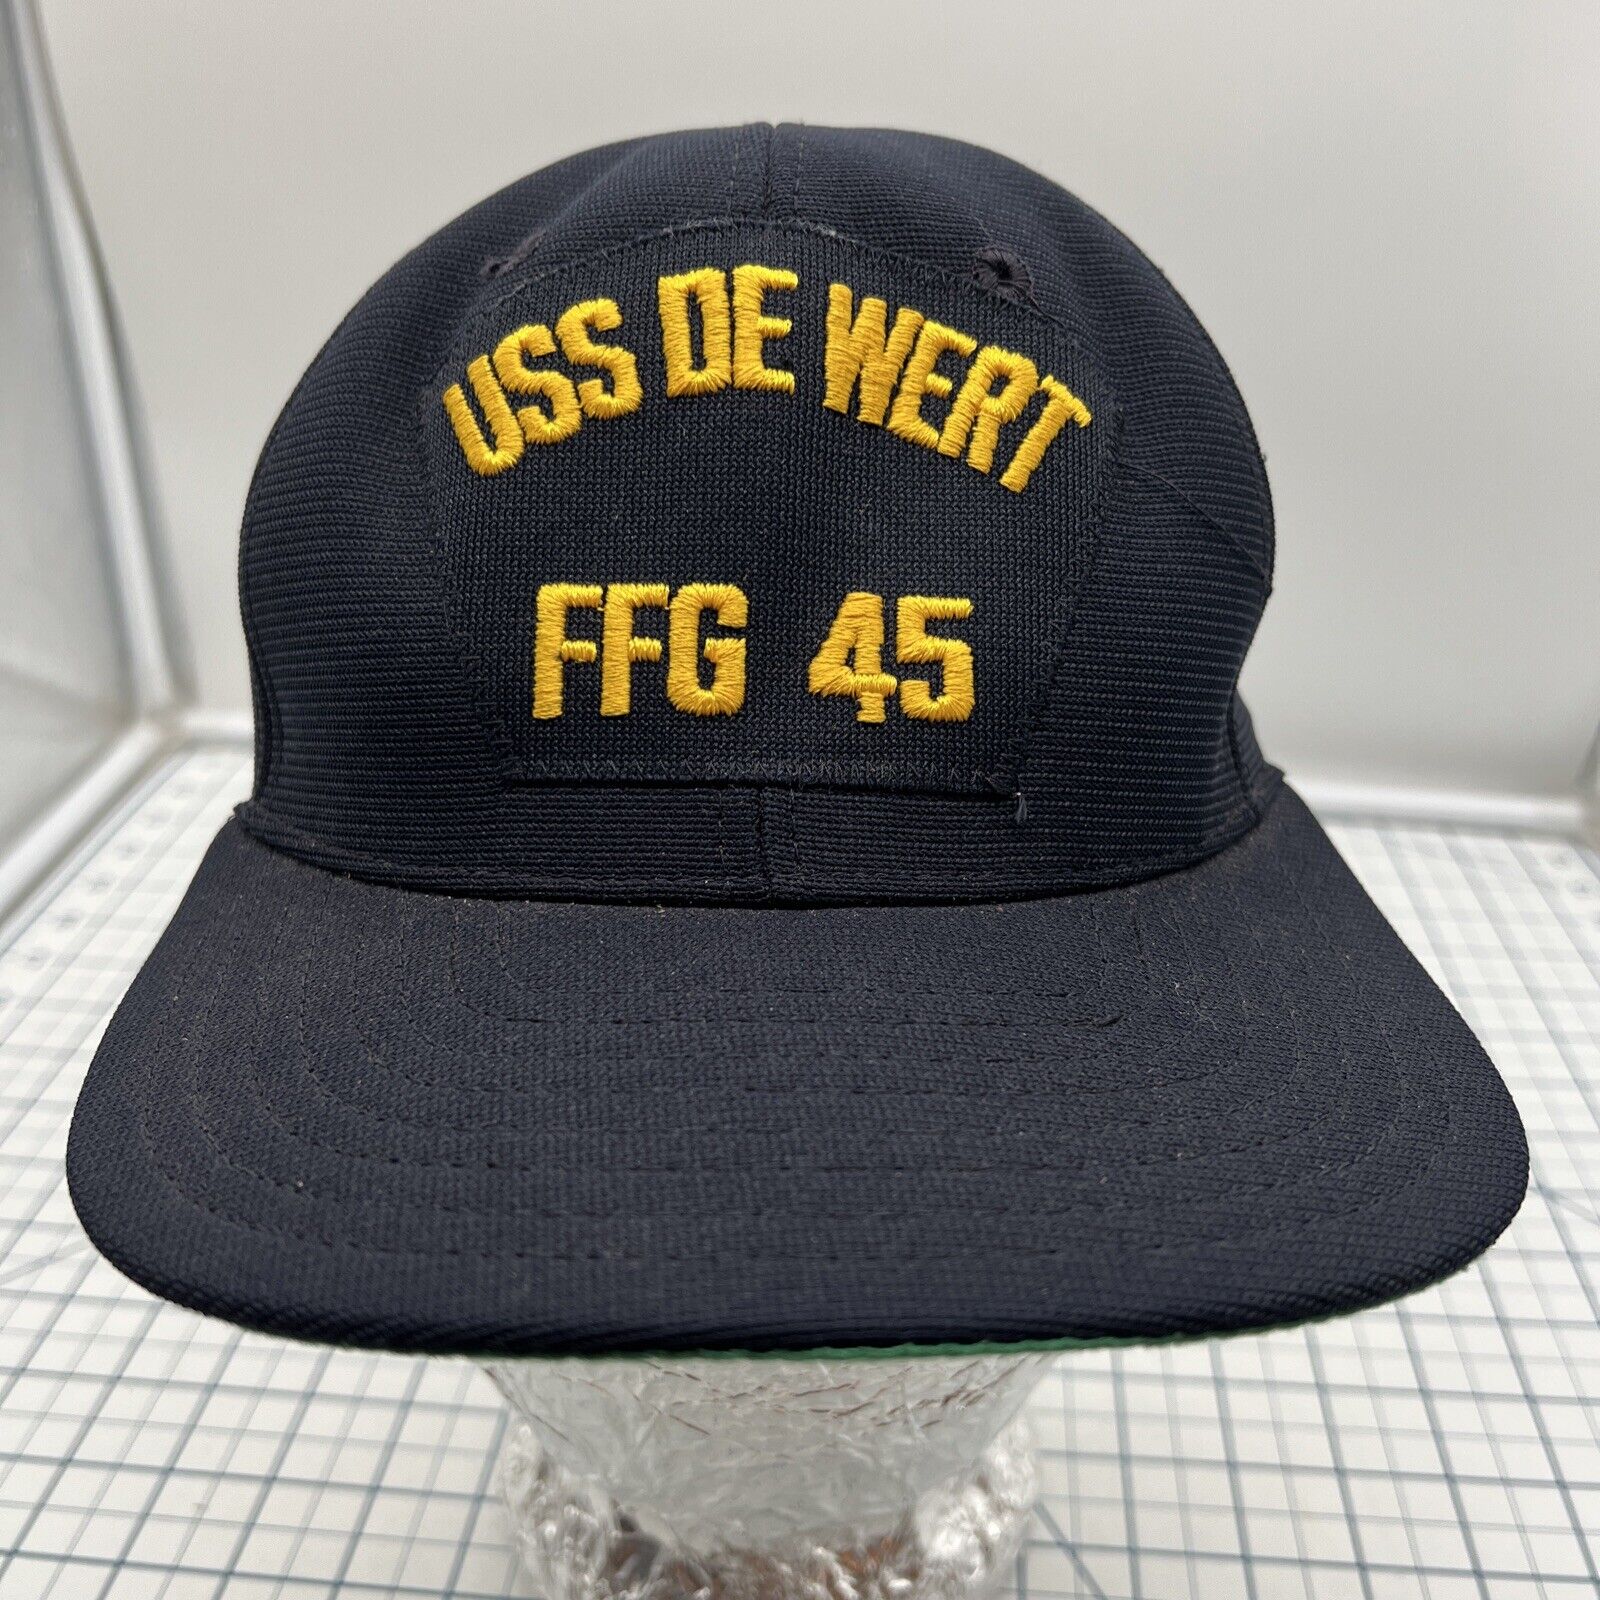 U.S. Navy USS De Wert FFG 45 Black Hat Vintage Snapback New Era *snap Broken*